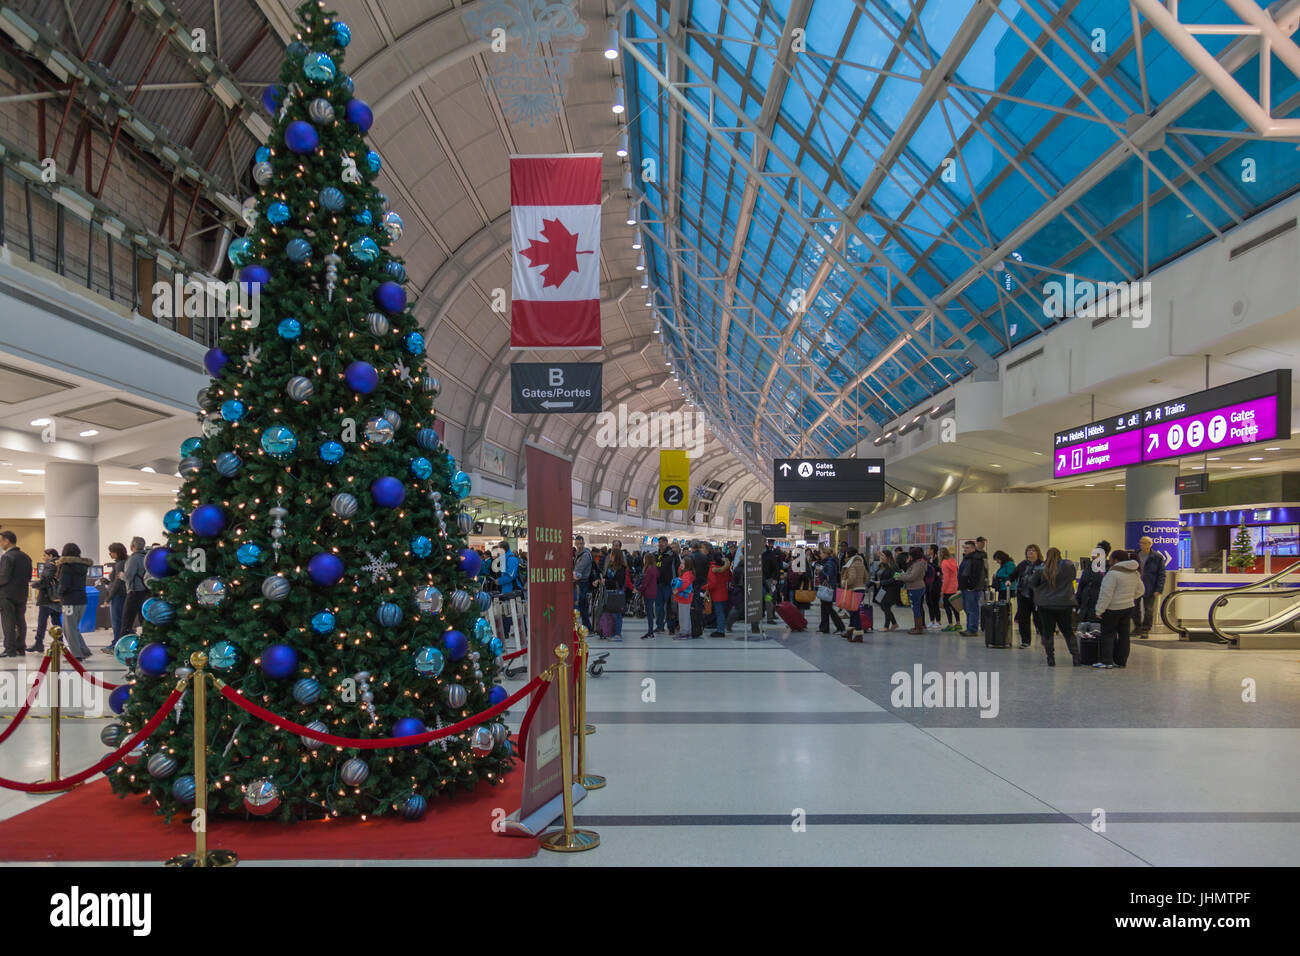 Weihnachtsbaum Beleuchtung in Toronto Pearson Airport. Pearson Airport ist der größte und verkehrsreichste Flughafen in Kanada Stockfoto